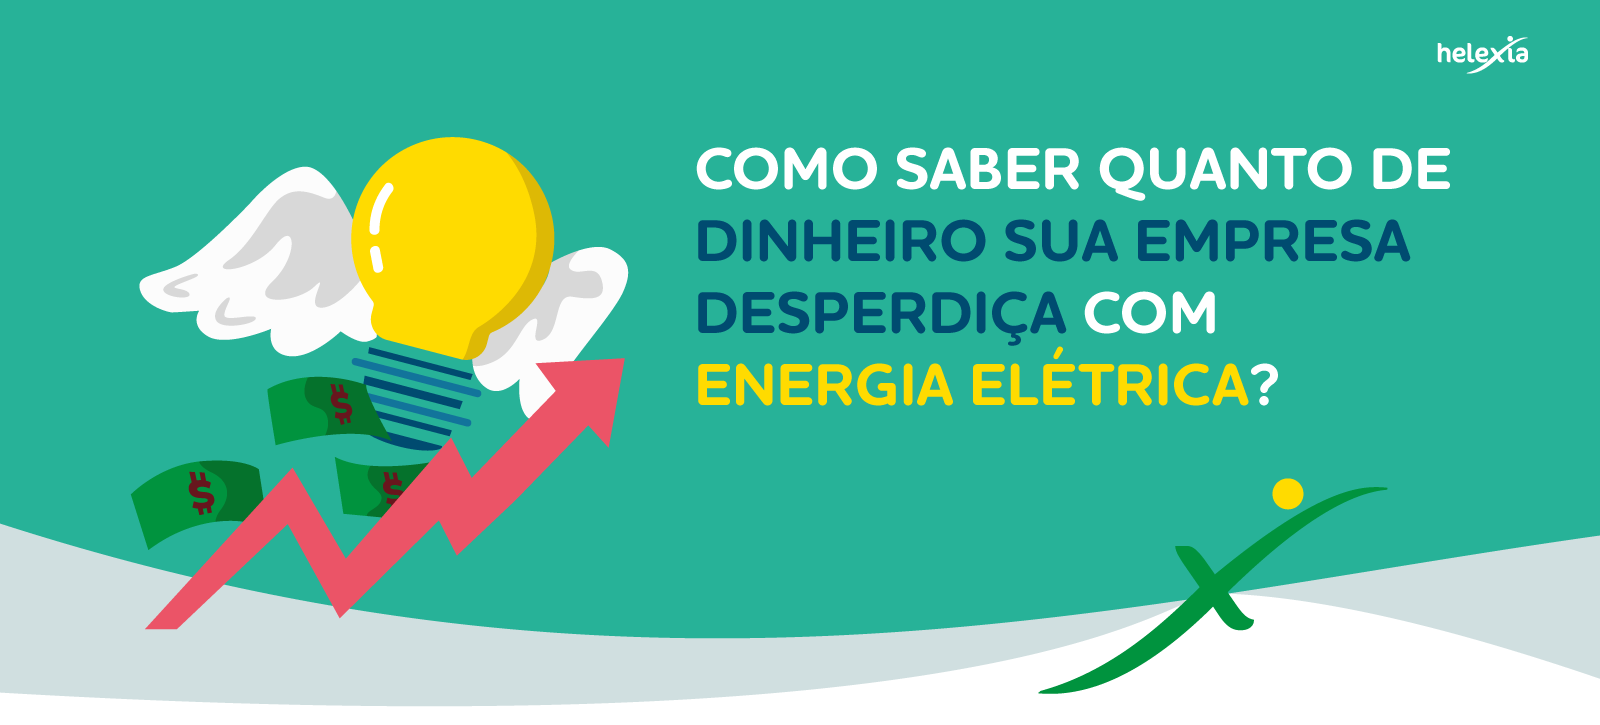 COMO SABER O QUANTO DE DINHEIRO SUA EMPRESA DESPERDIÇA COM ENERGIA ELÉTRICA?